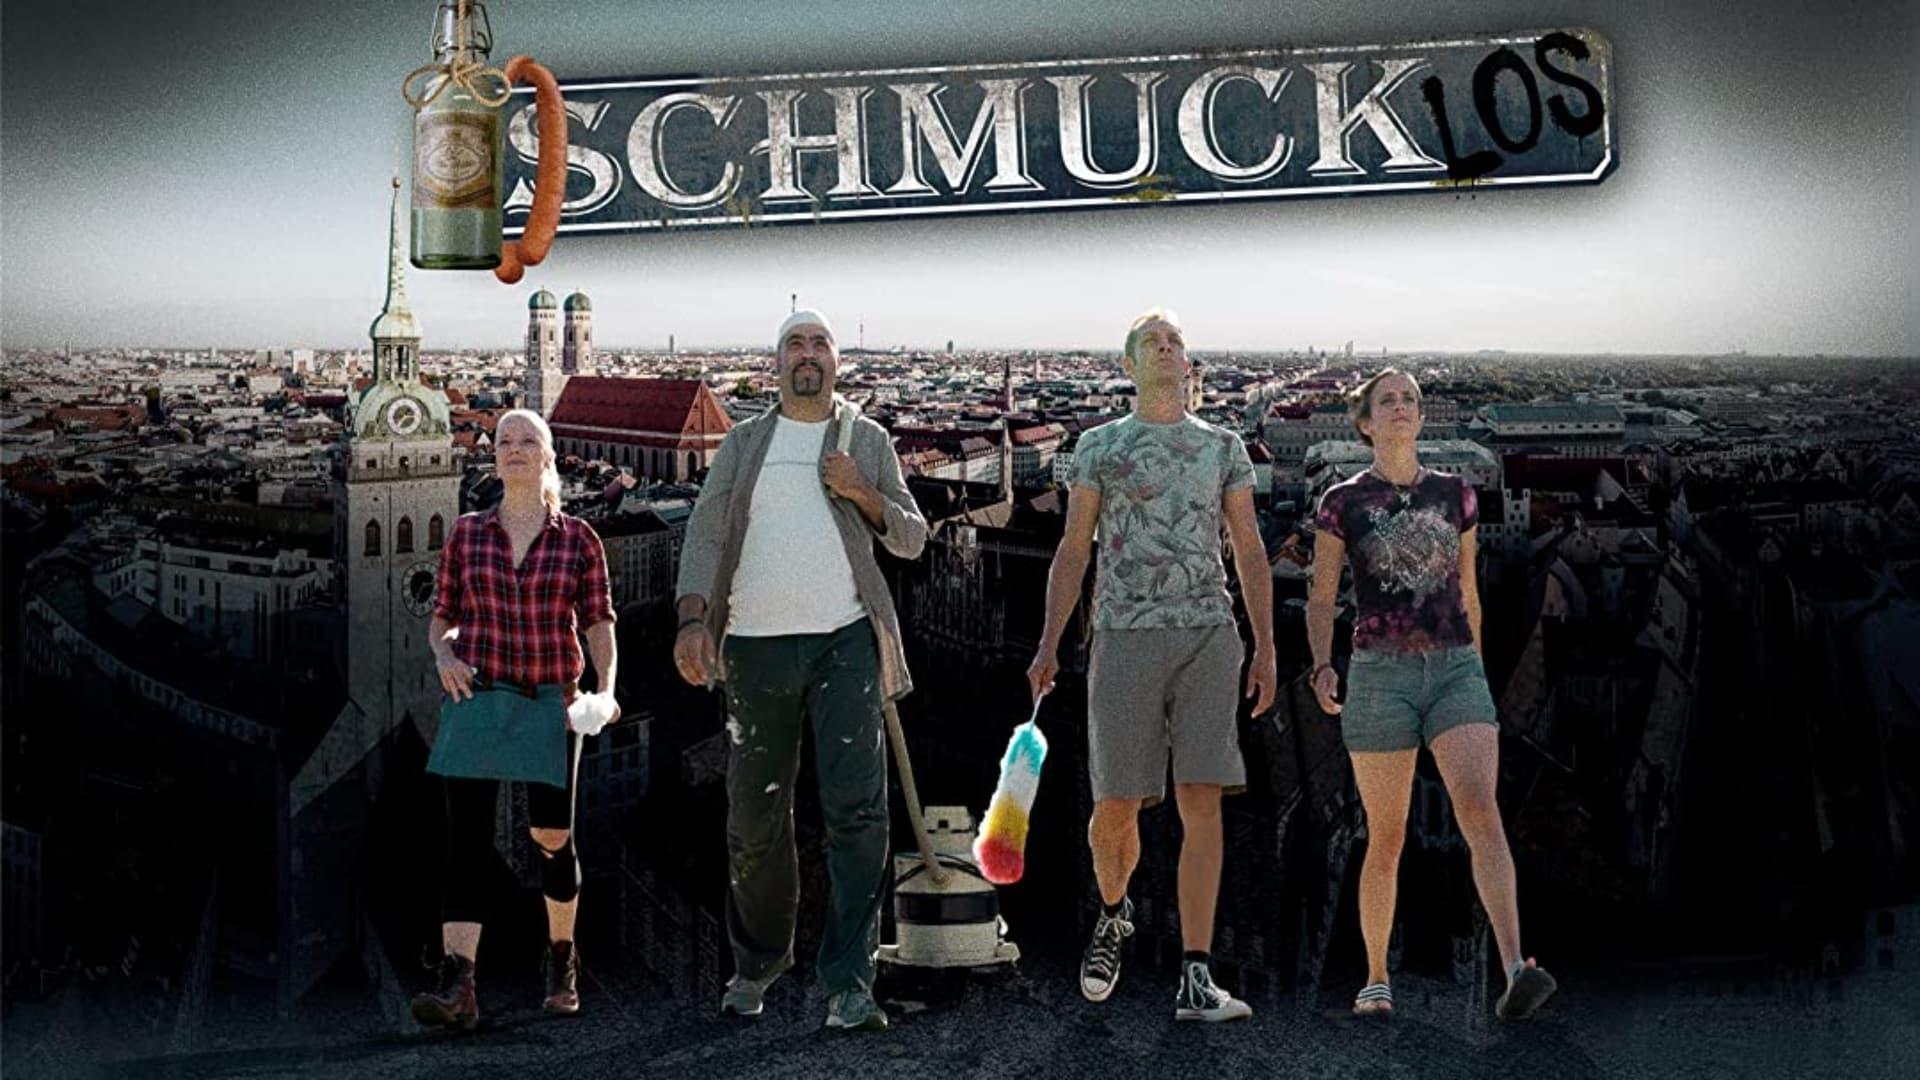 Schmucklos backdrop